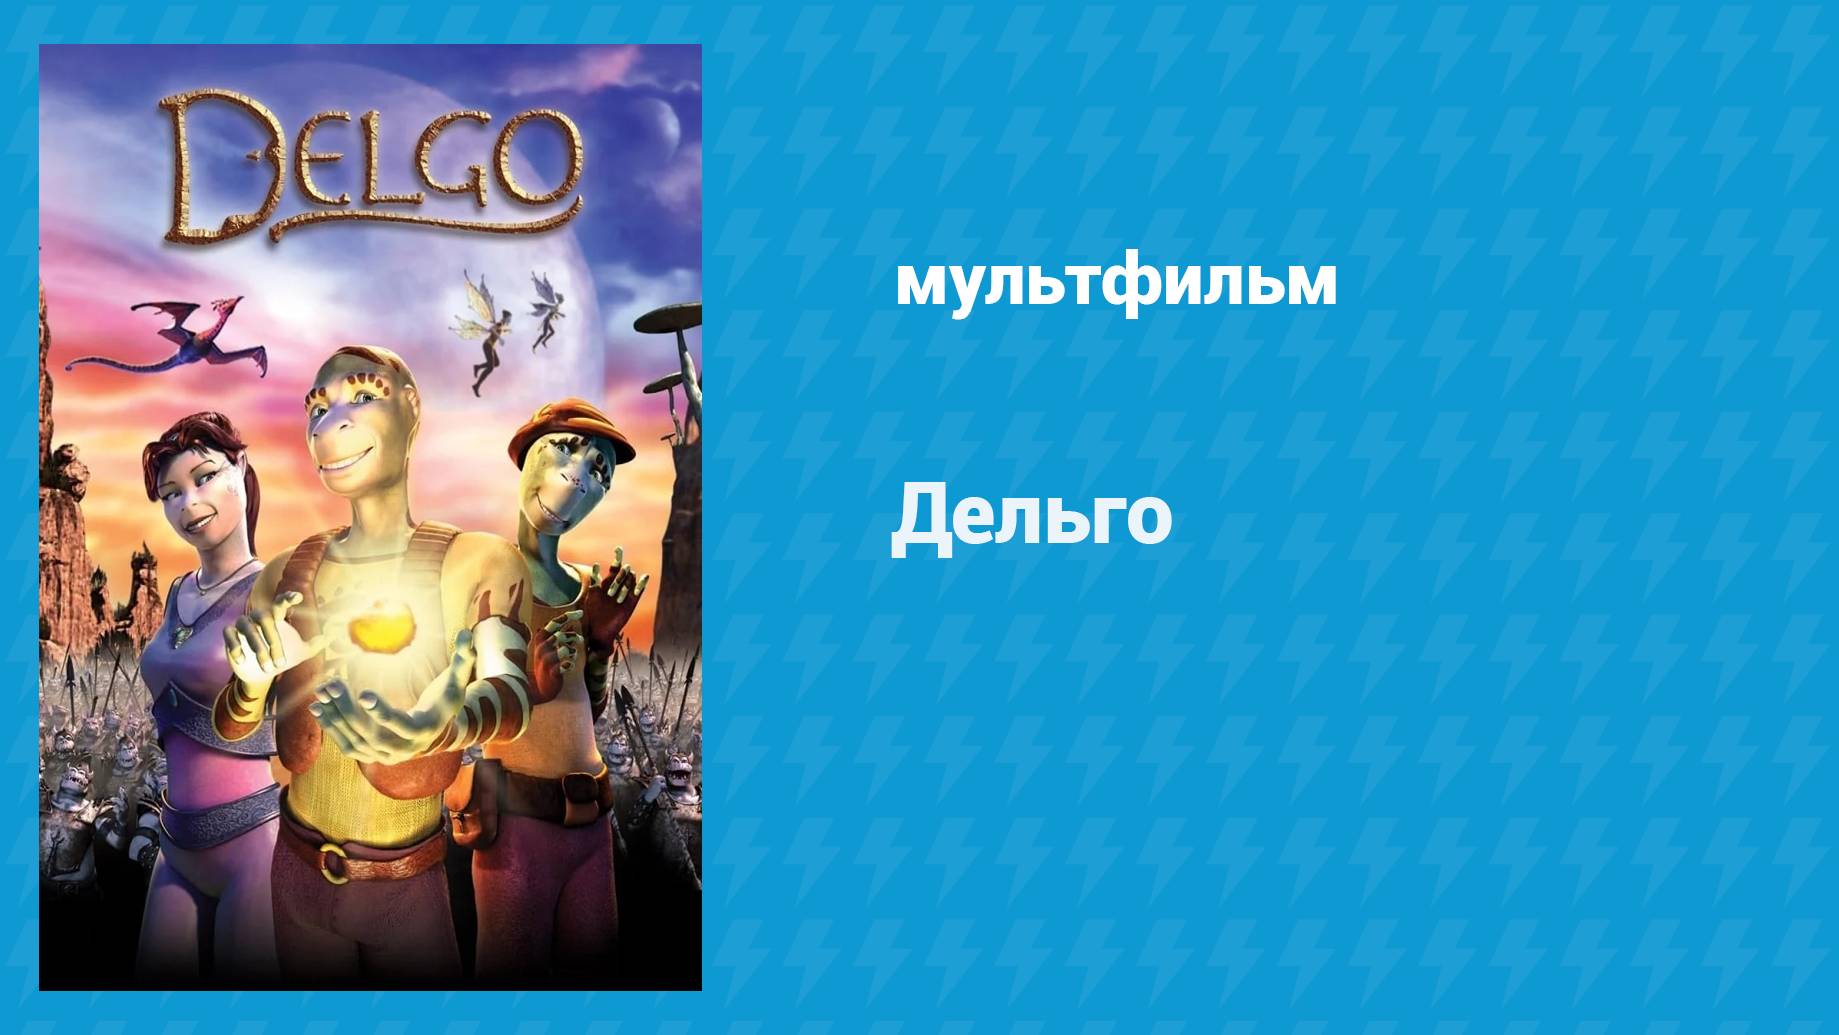 Дельго (мультфильм, 2008)